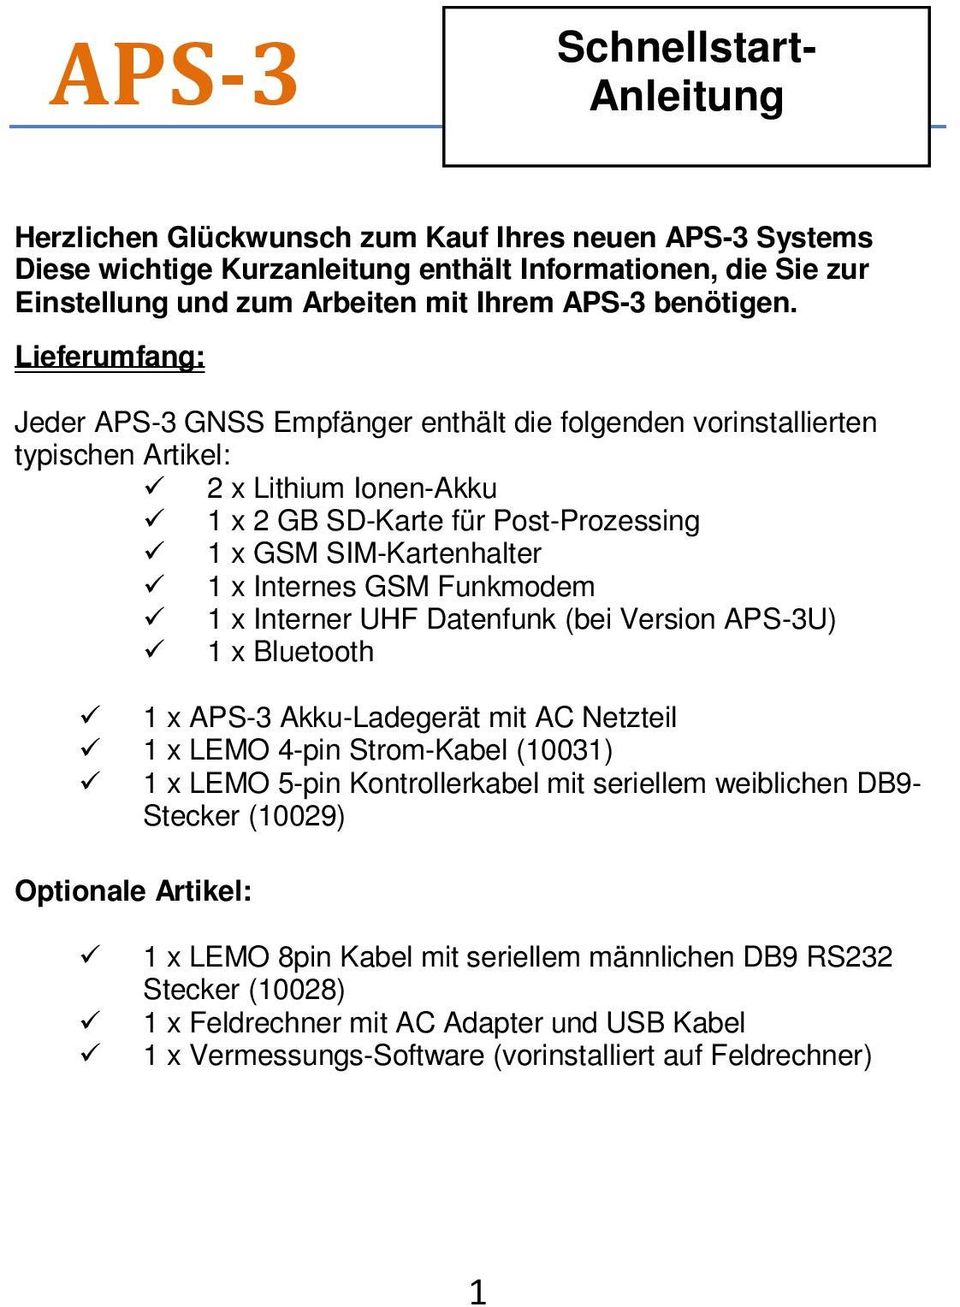 Lieferumfang: Jeder APS-3 GNSS Empfänger enthält die folgenden vorinstallierten typischen Artikel: 2 x Lithium Ionen-Akku 1 x 2 GB SD-Karte für Post-Prozessing 1 x GSM SIM-Kartenhalter 1 x Internes